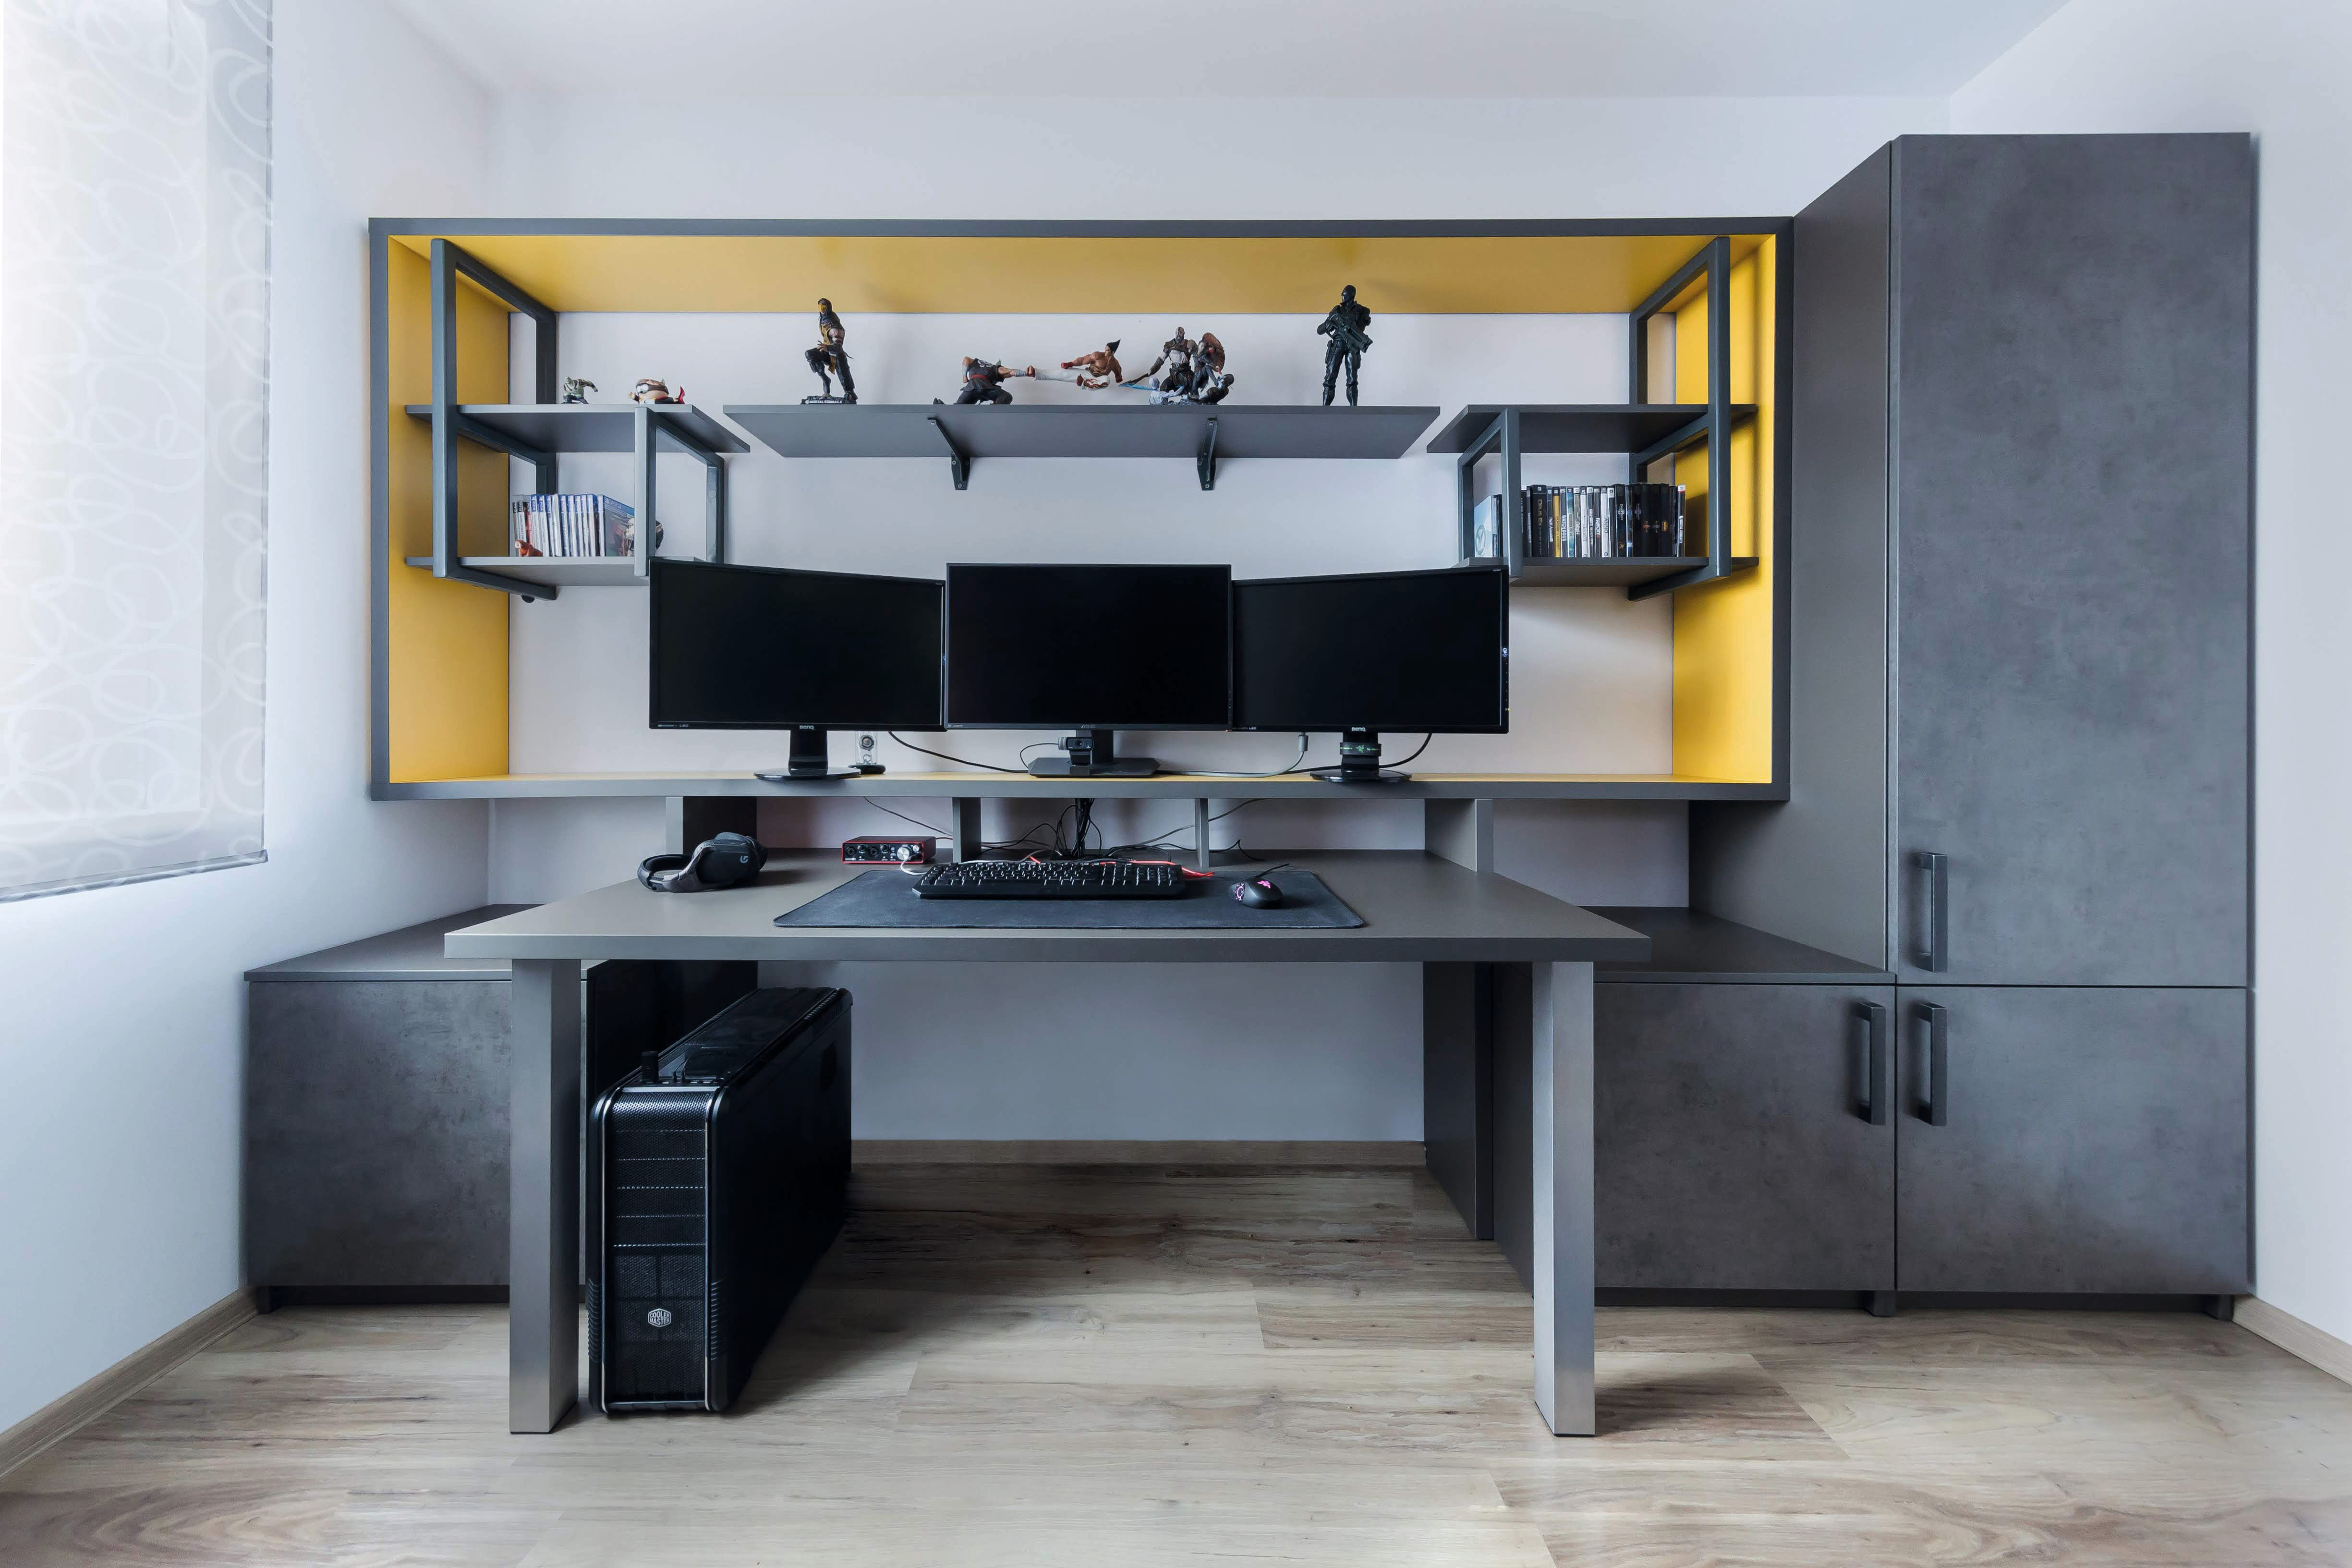 De kantoorruimte is ontworpen in grijze tinten met gele accenten.